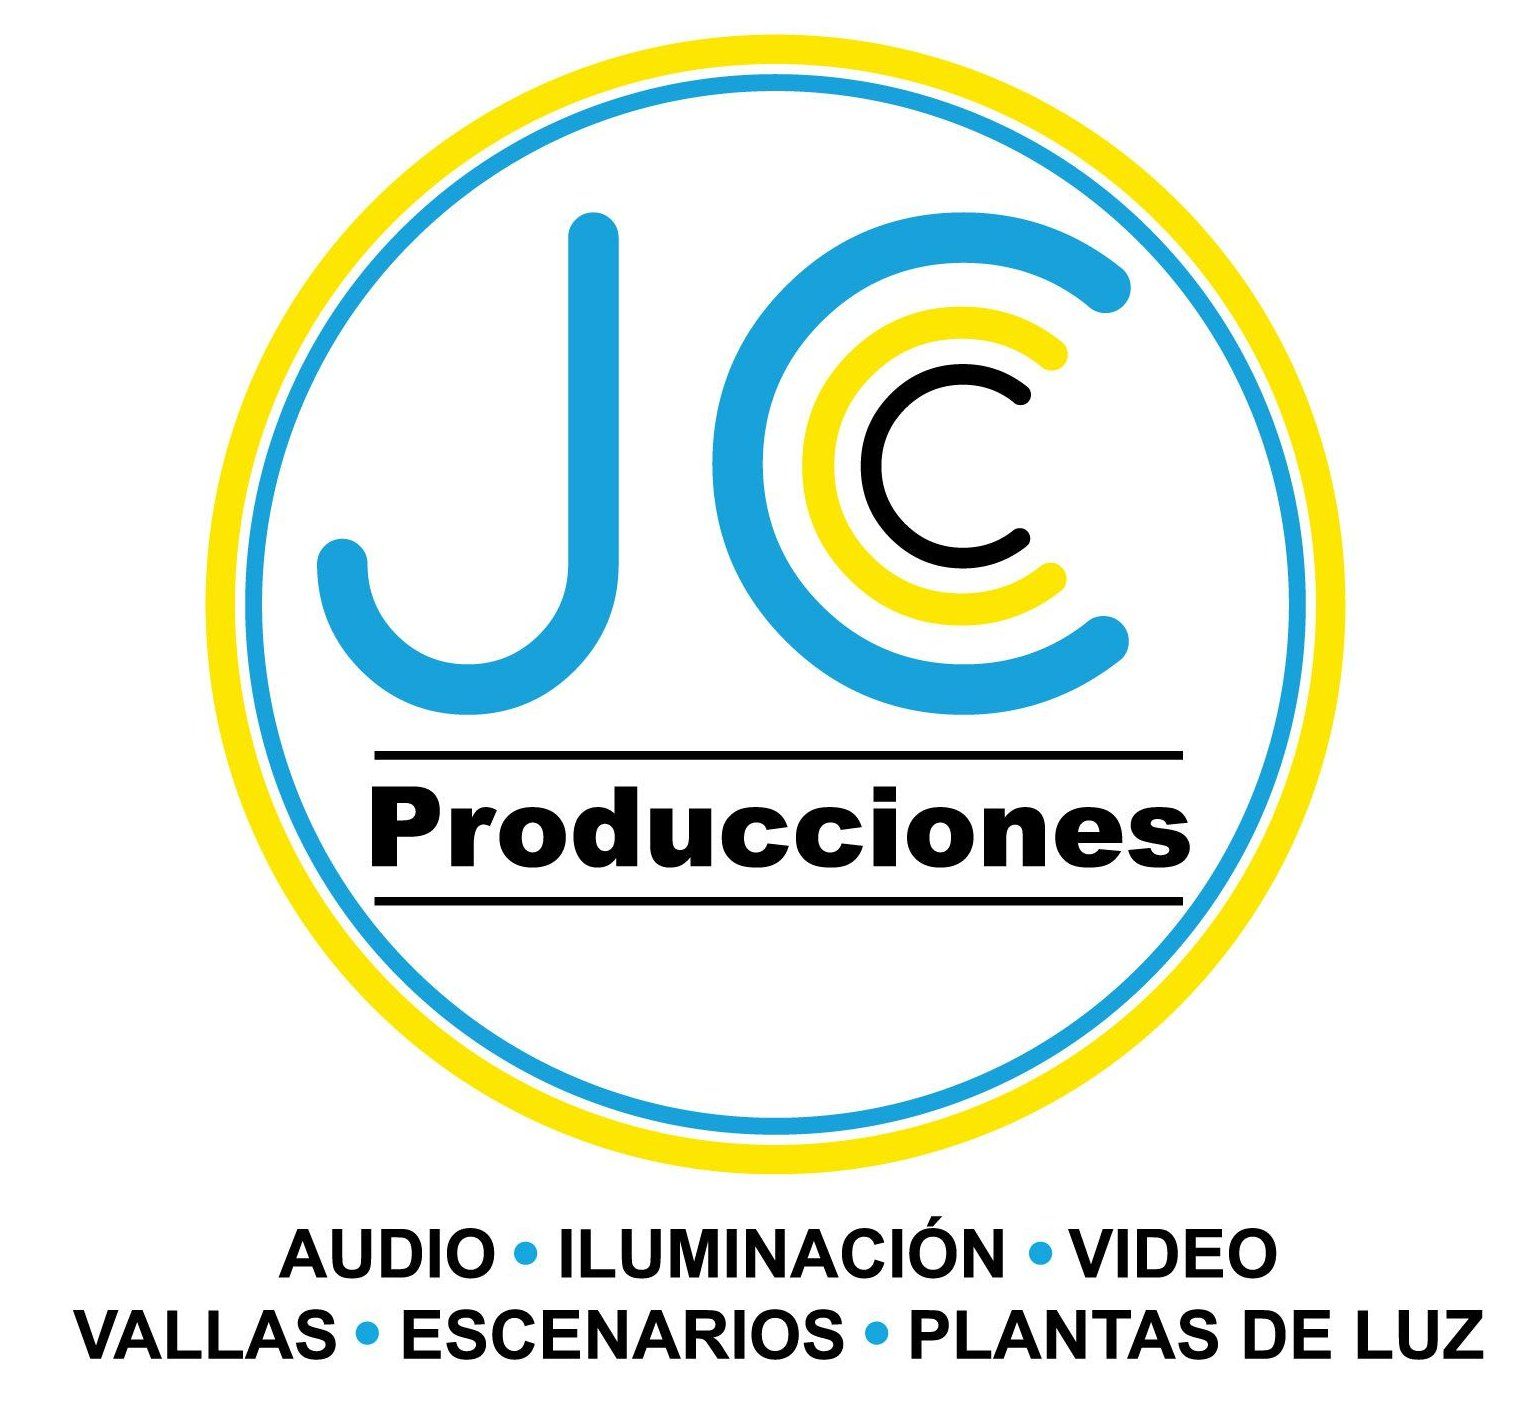 JC Producciones